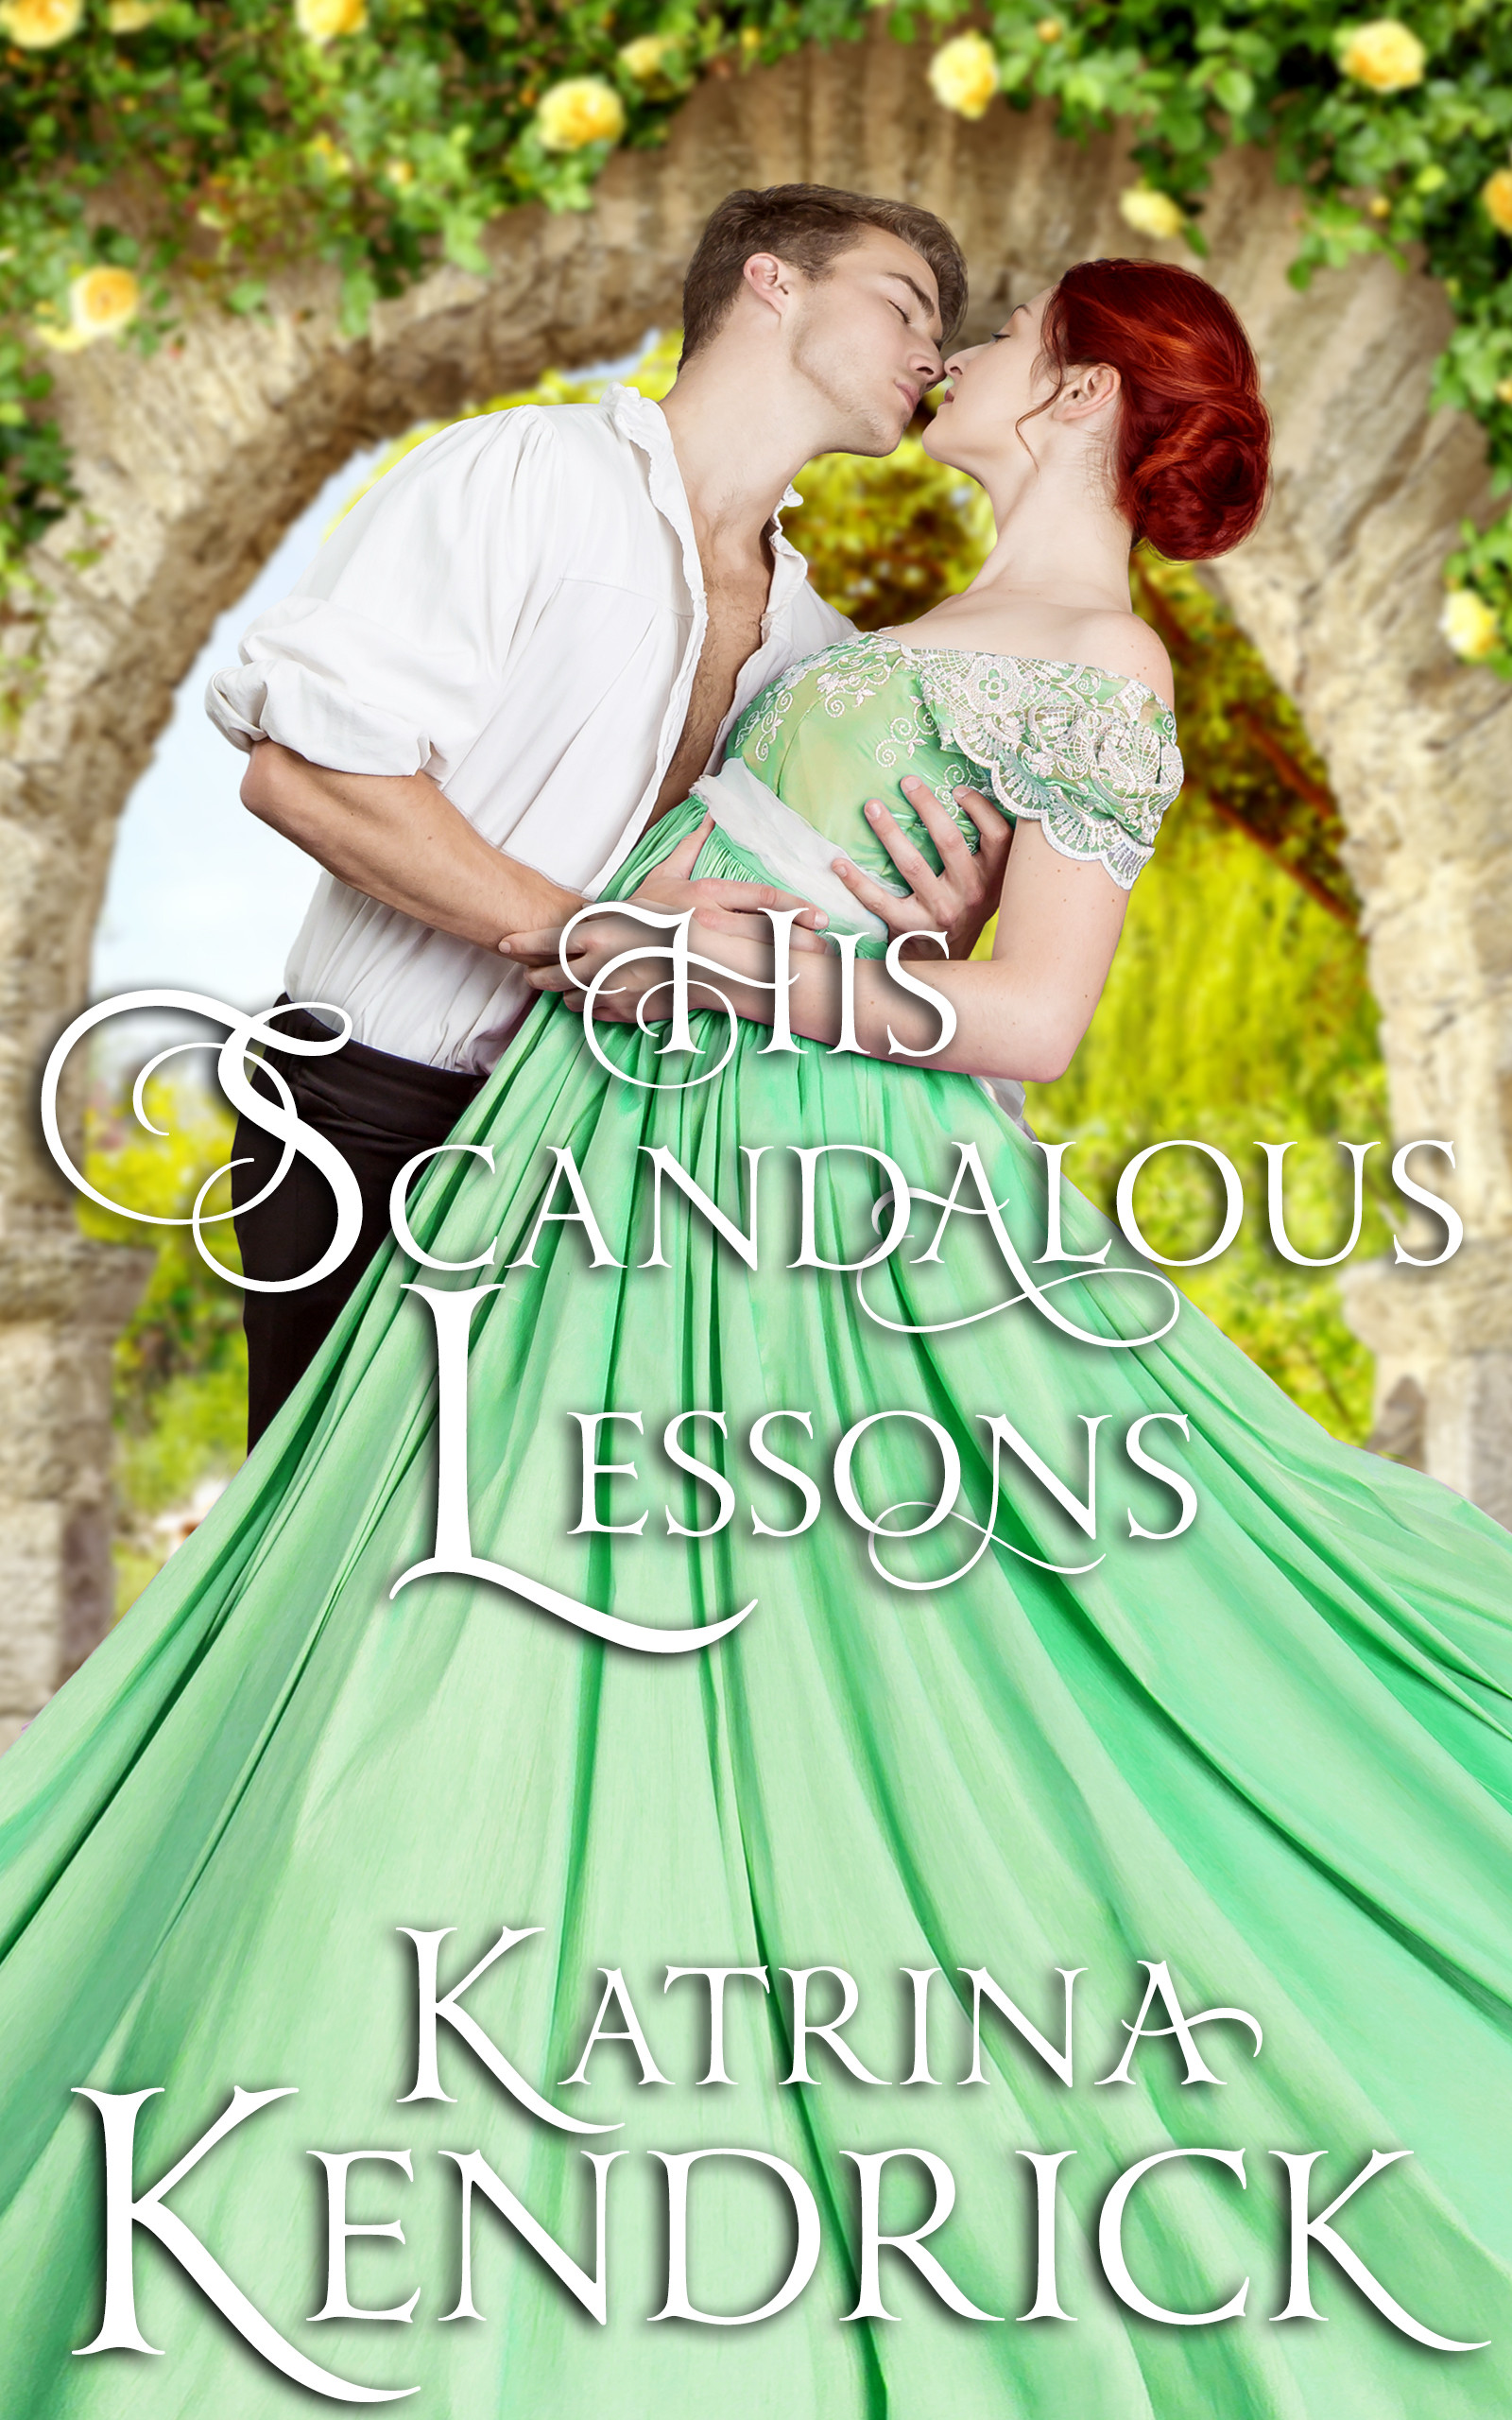 His Scandalous Lessons (Private Arrangements #1)